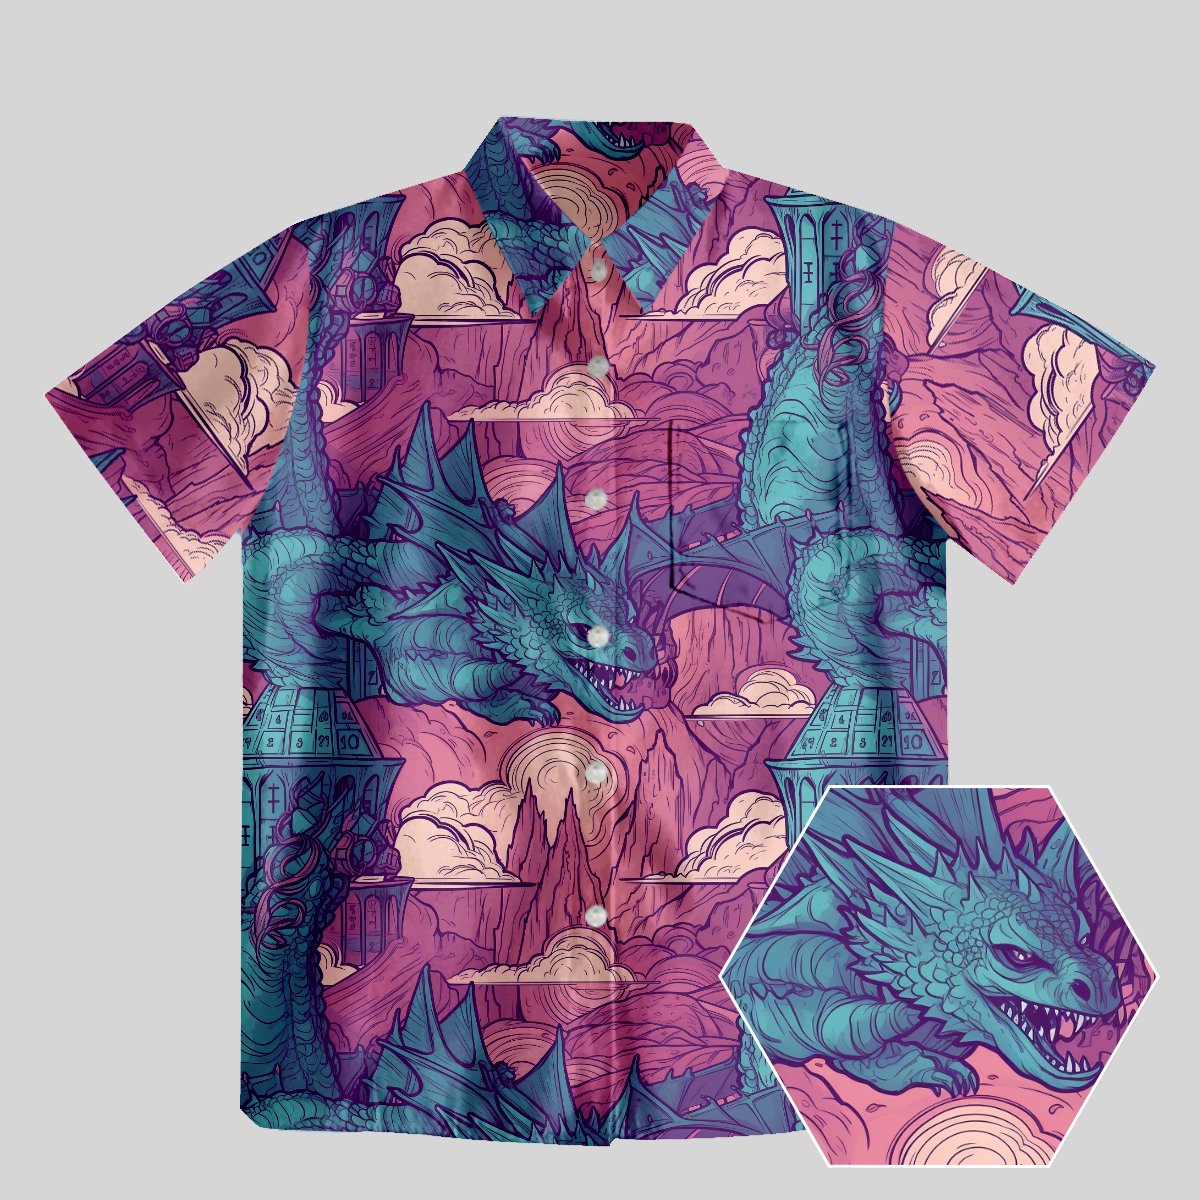 DND Dragon Pattern Button Up Pocket Shirt - Geeksoutfit